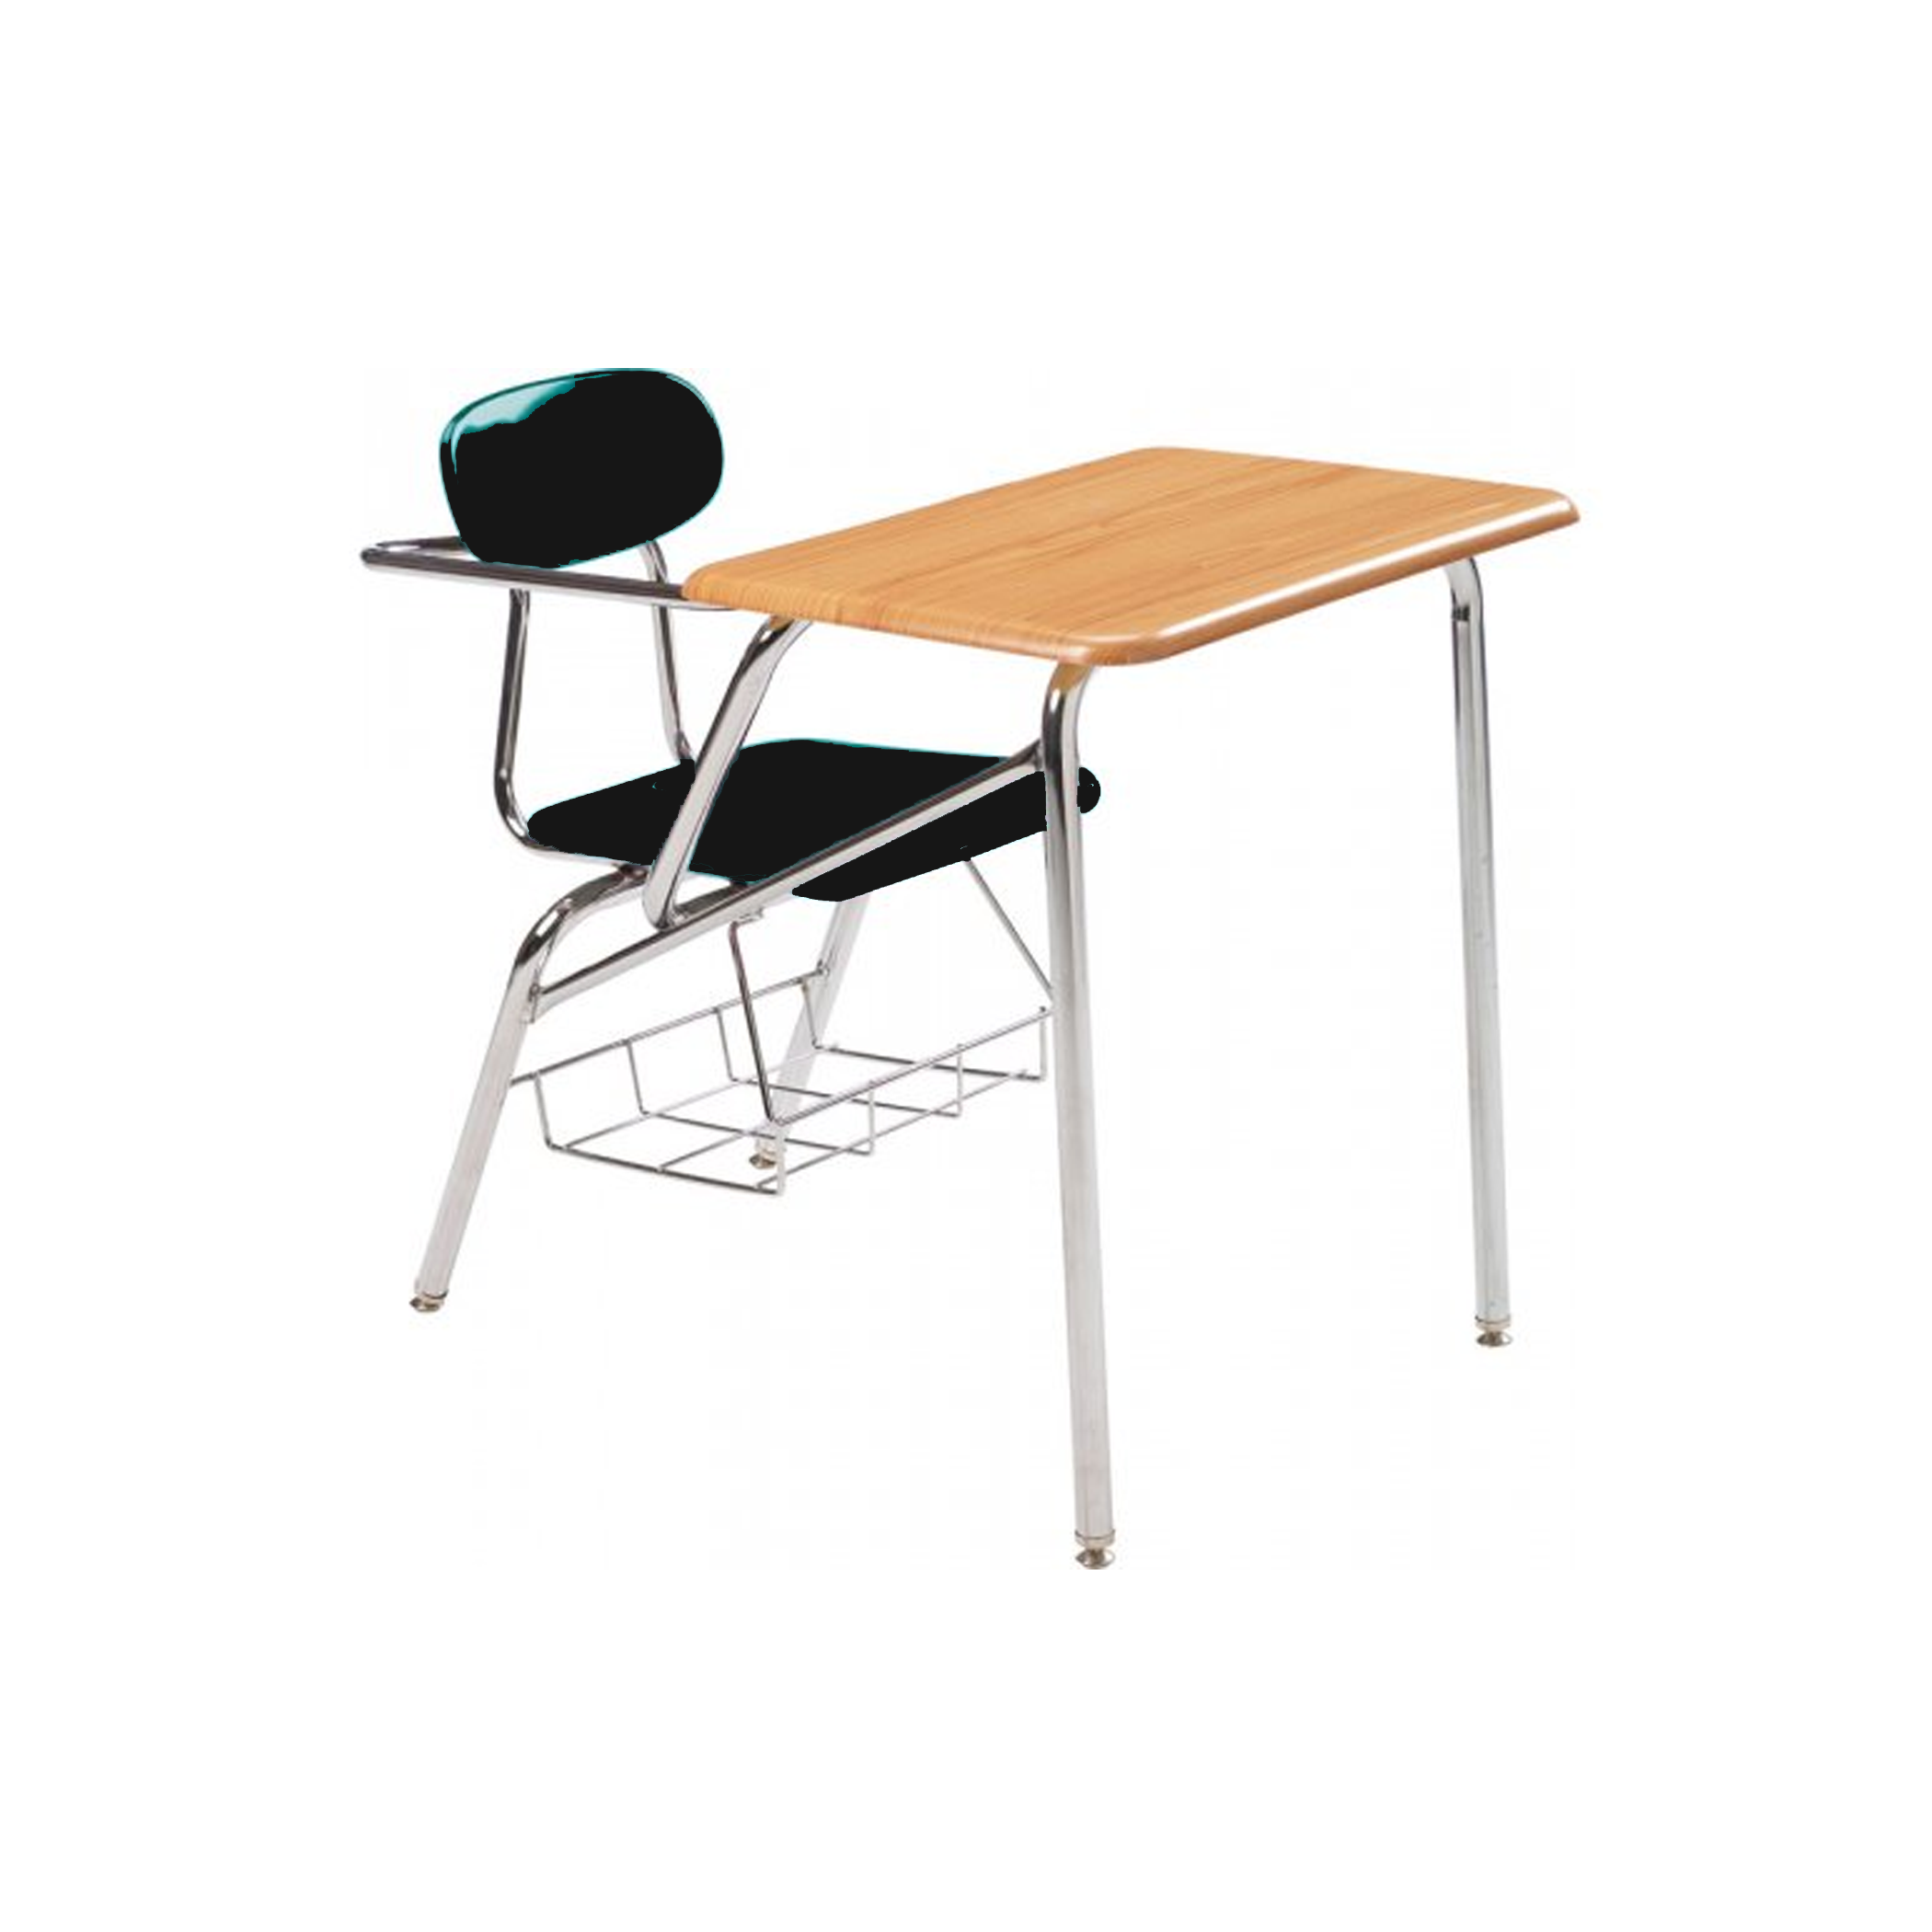 Combo Desk with Support Brace - RH- Lt Oak Woodstone - Black Seat - 16"H